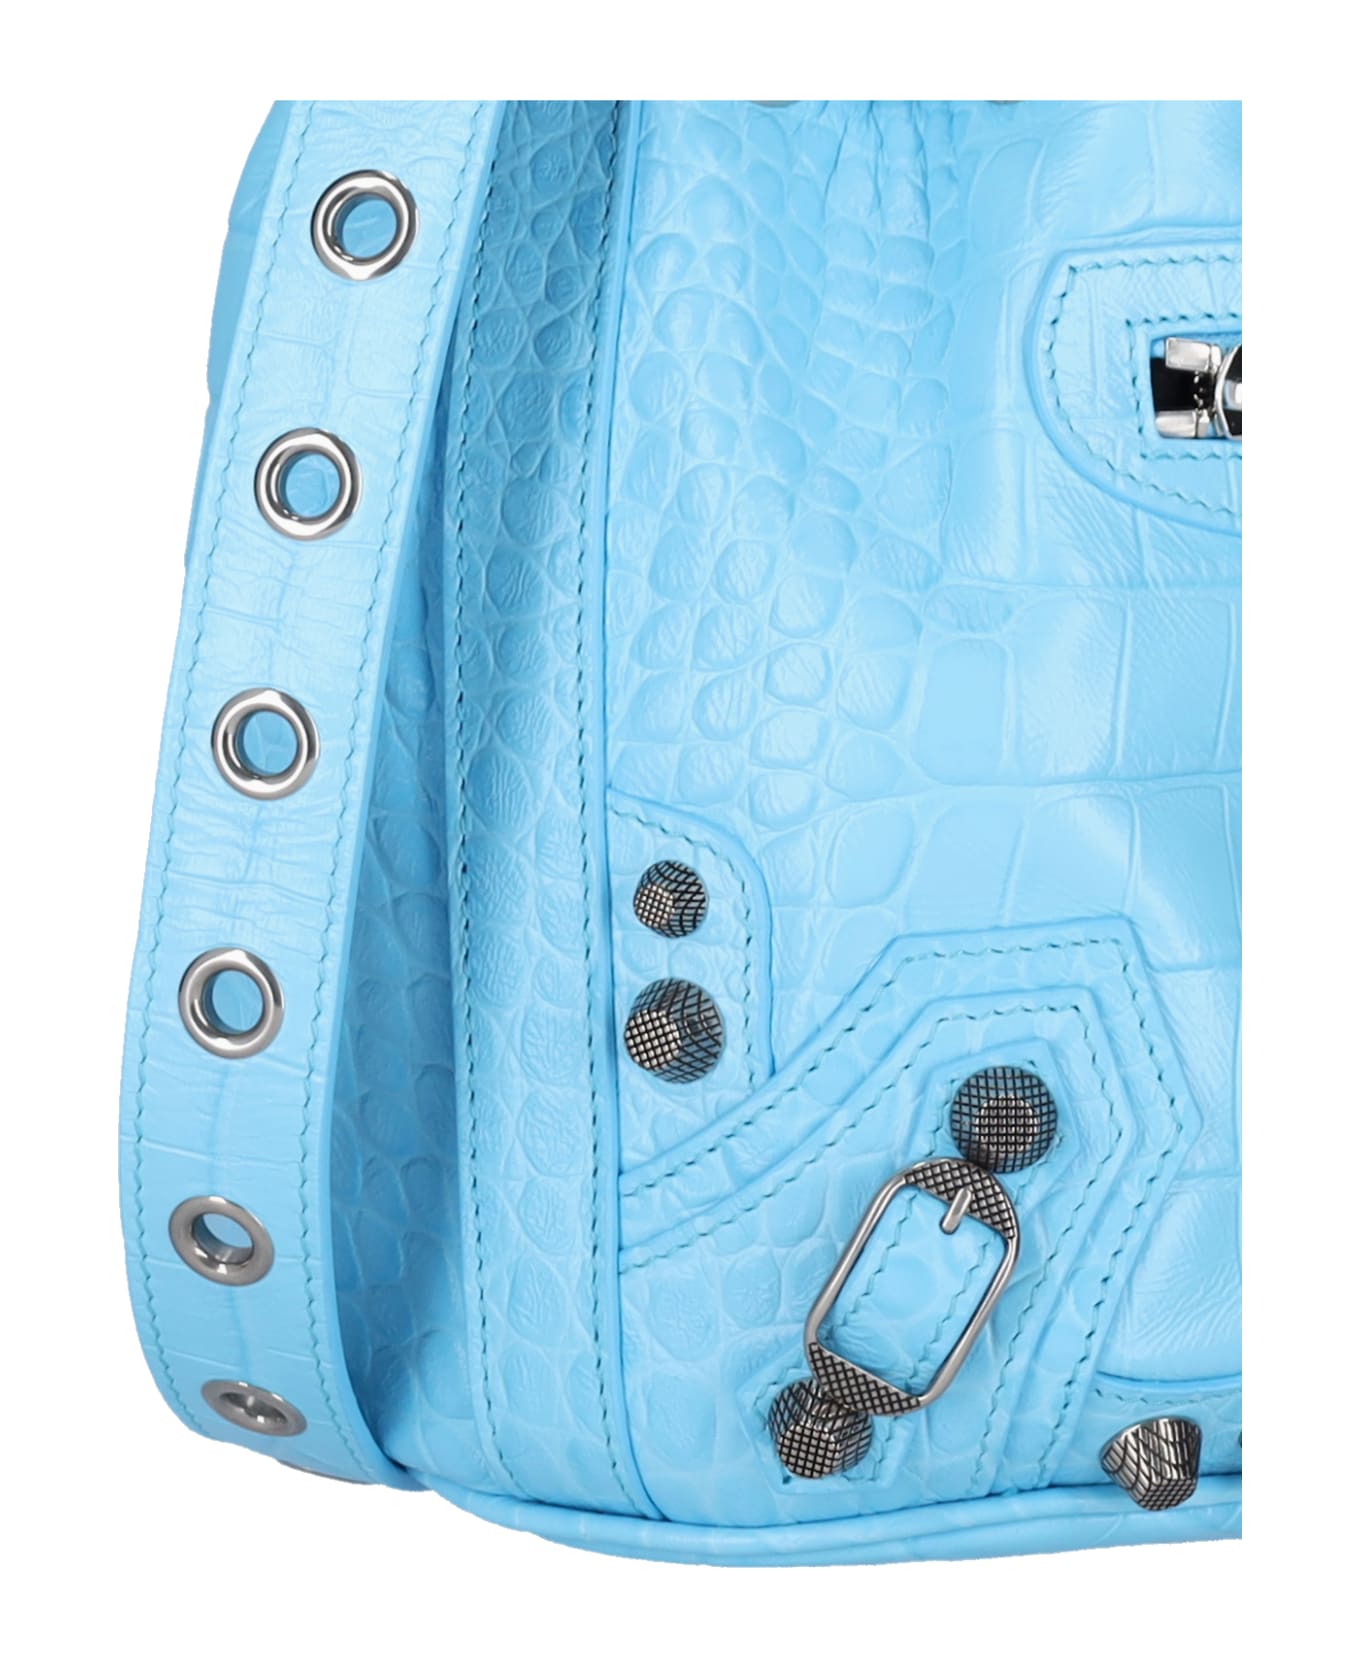 Balenciaga Le Cagole Xs Bucket Bag - Light blue